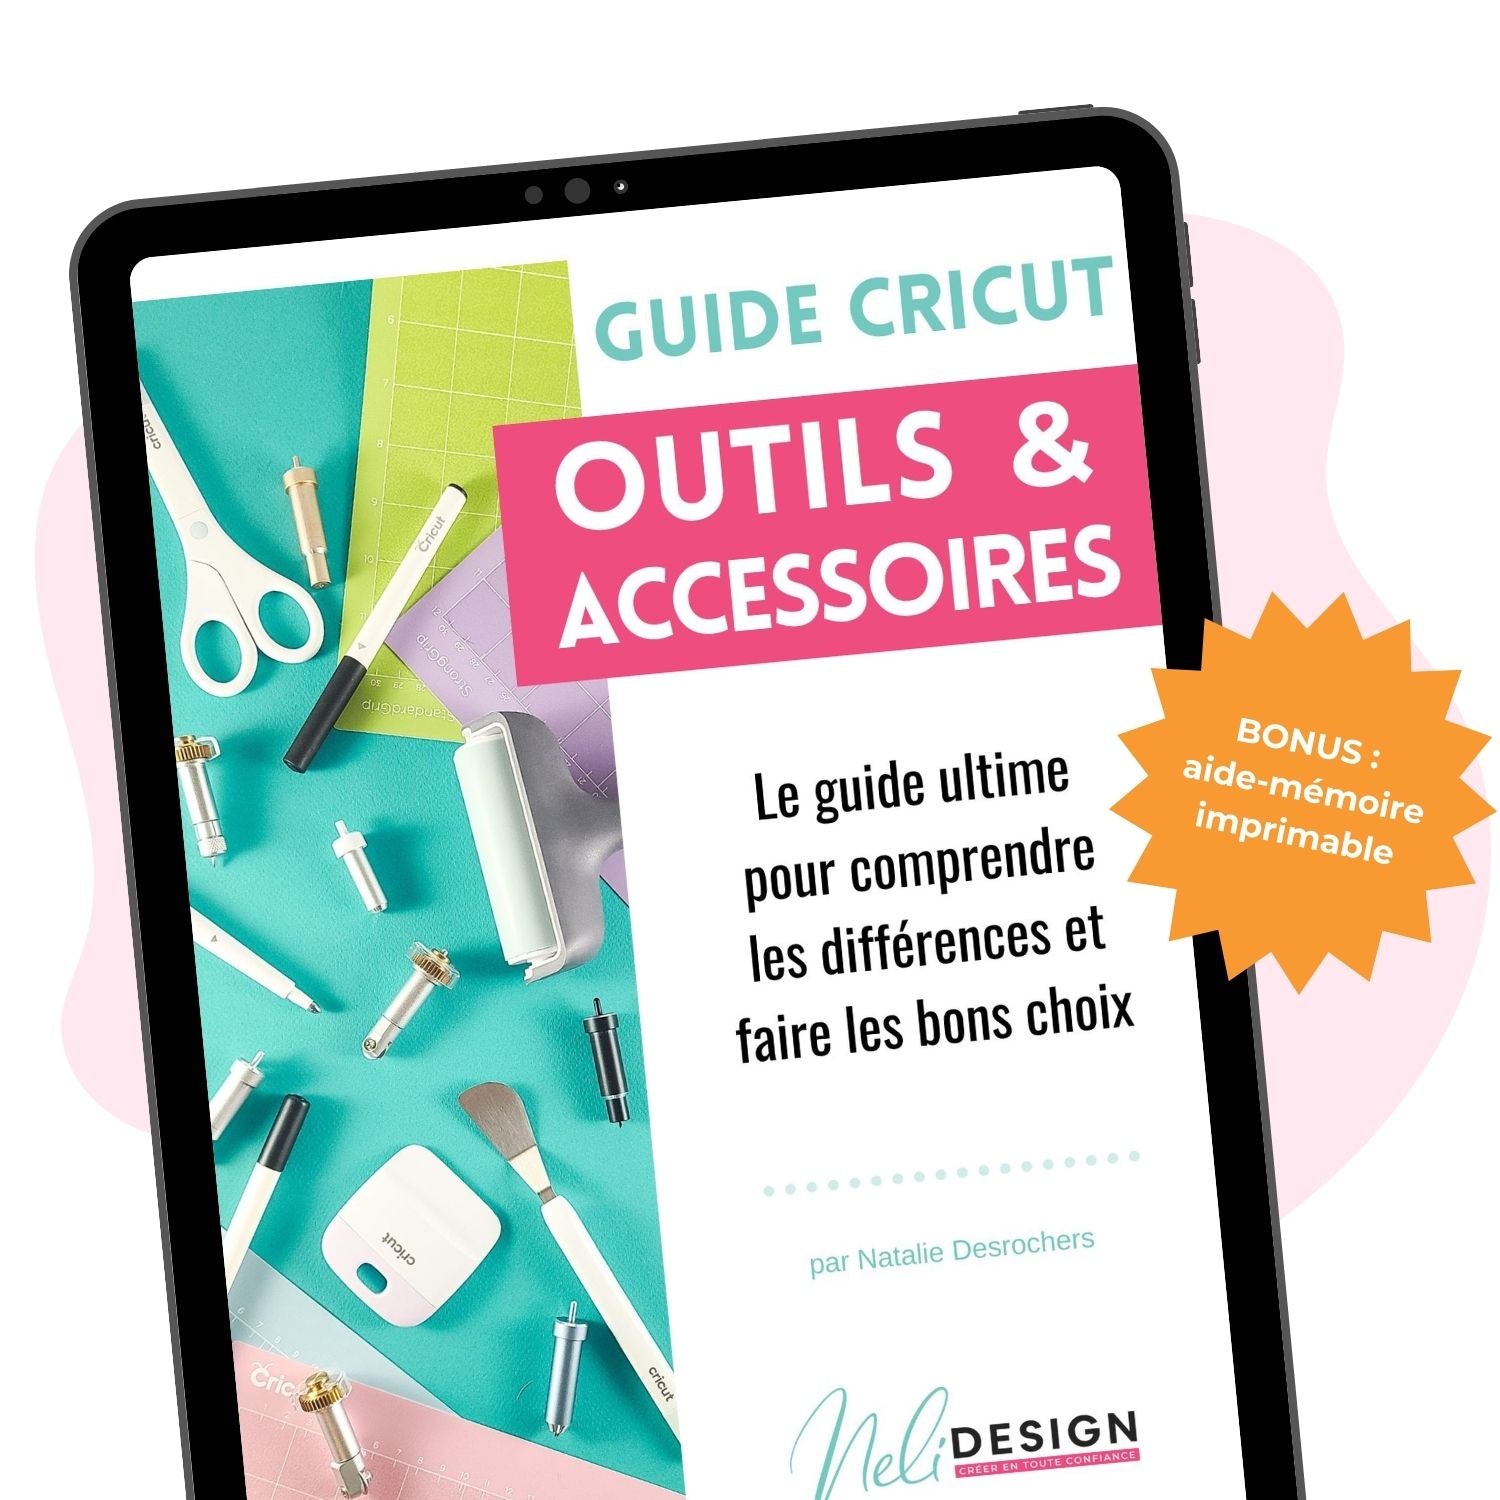 Image du Guide Cricut en français sur les outils et accessoires pour les débutants. Le guide ultime pour comprendre la différence et faire les bons choix